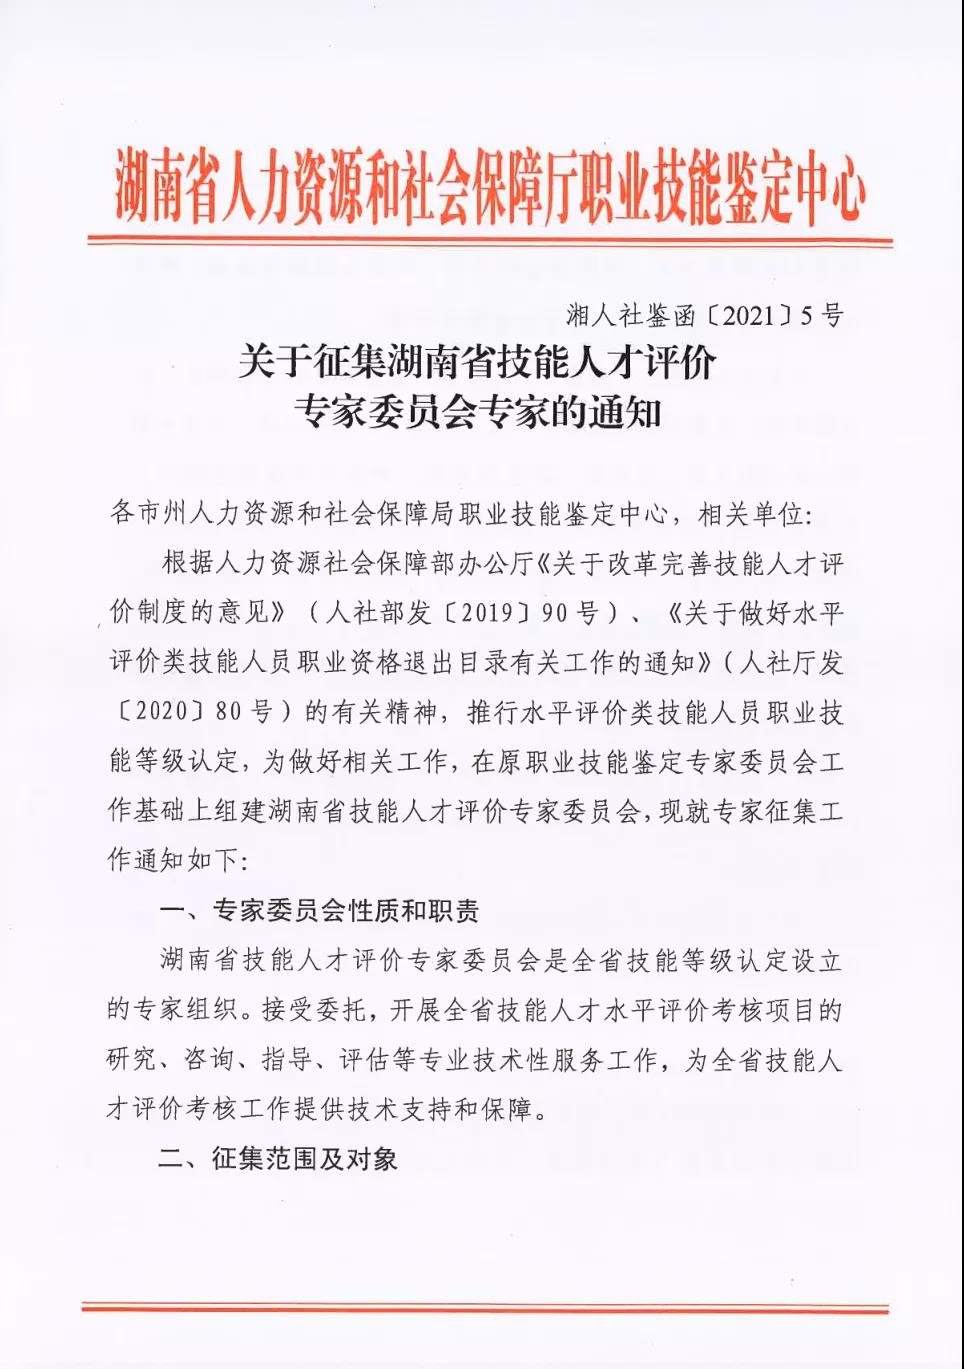 关于征集湖南省技能人才评价专家委员会专家的通知